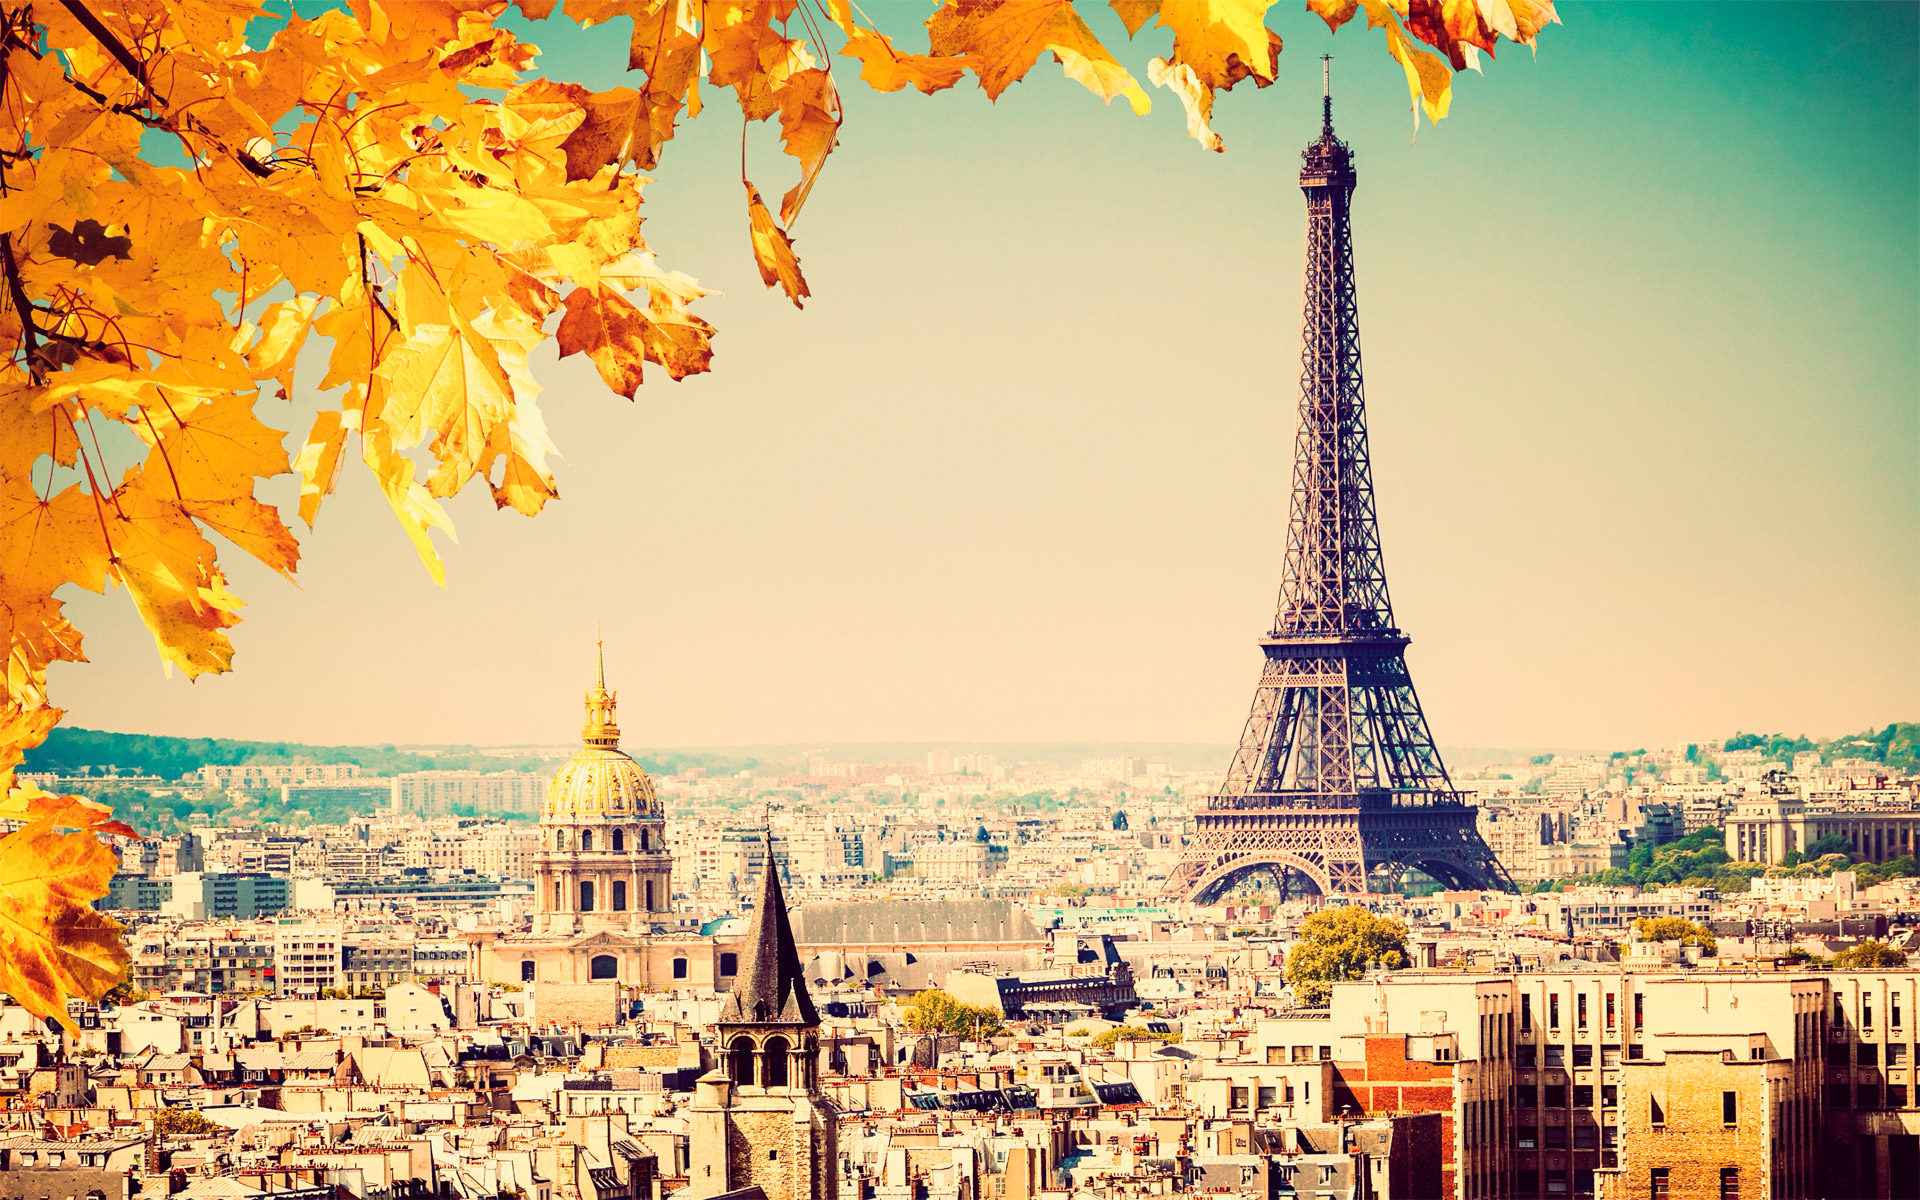 Thủ đô của nước Pháp và là một trong ba thành phố phát triển kinh tế nhanh nhất thế giới cùng với London và New York. Paris là một trung tâm văn hóa lớn của thế giới và cũng là một trong những thành phố du lịch thu hút nhất.